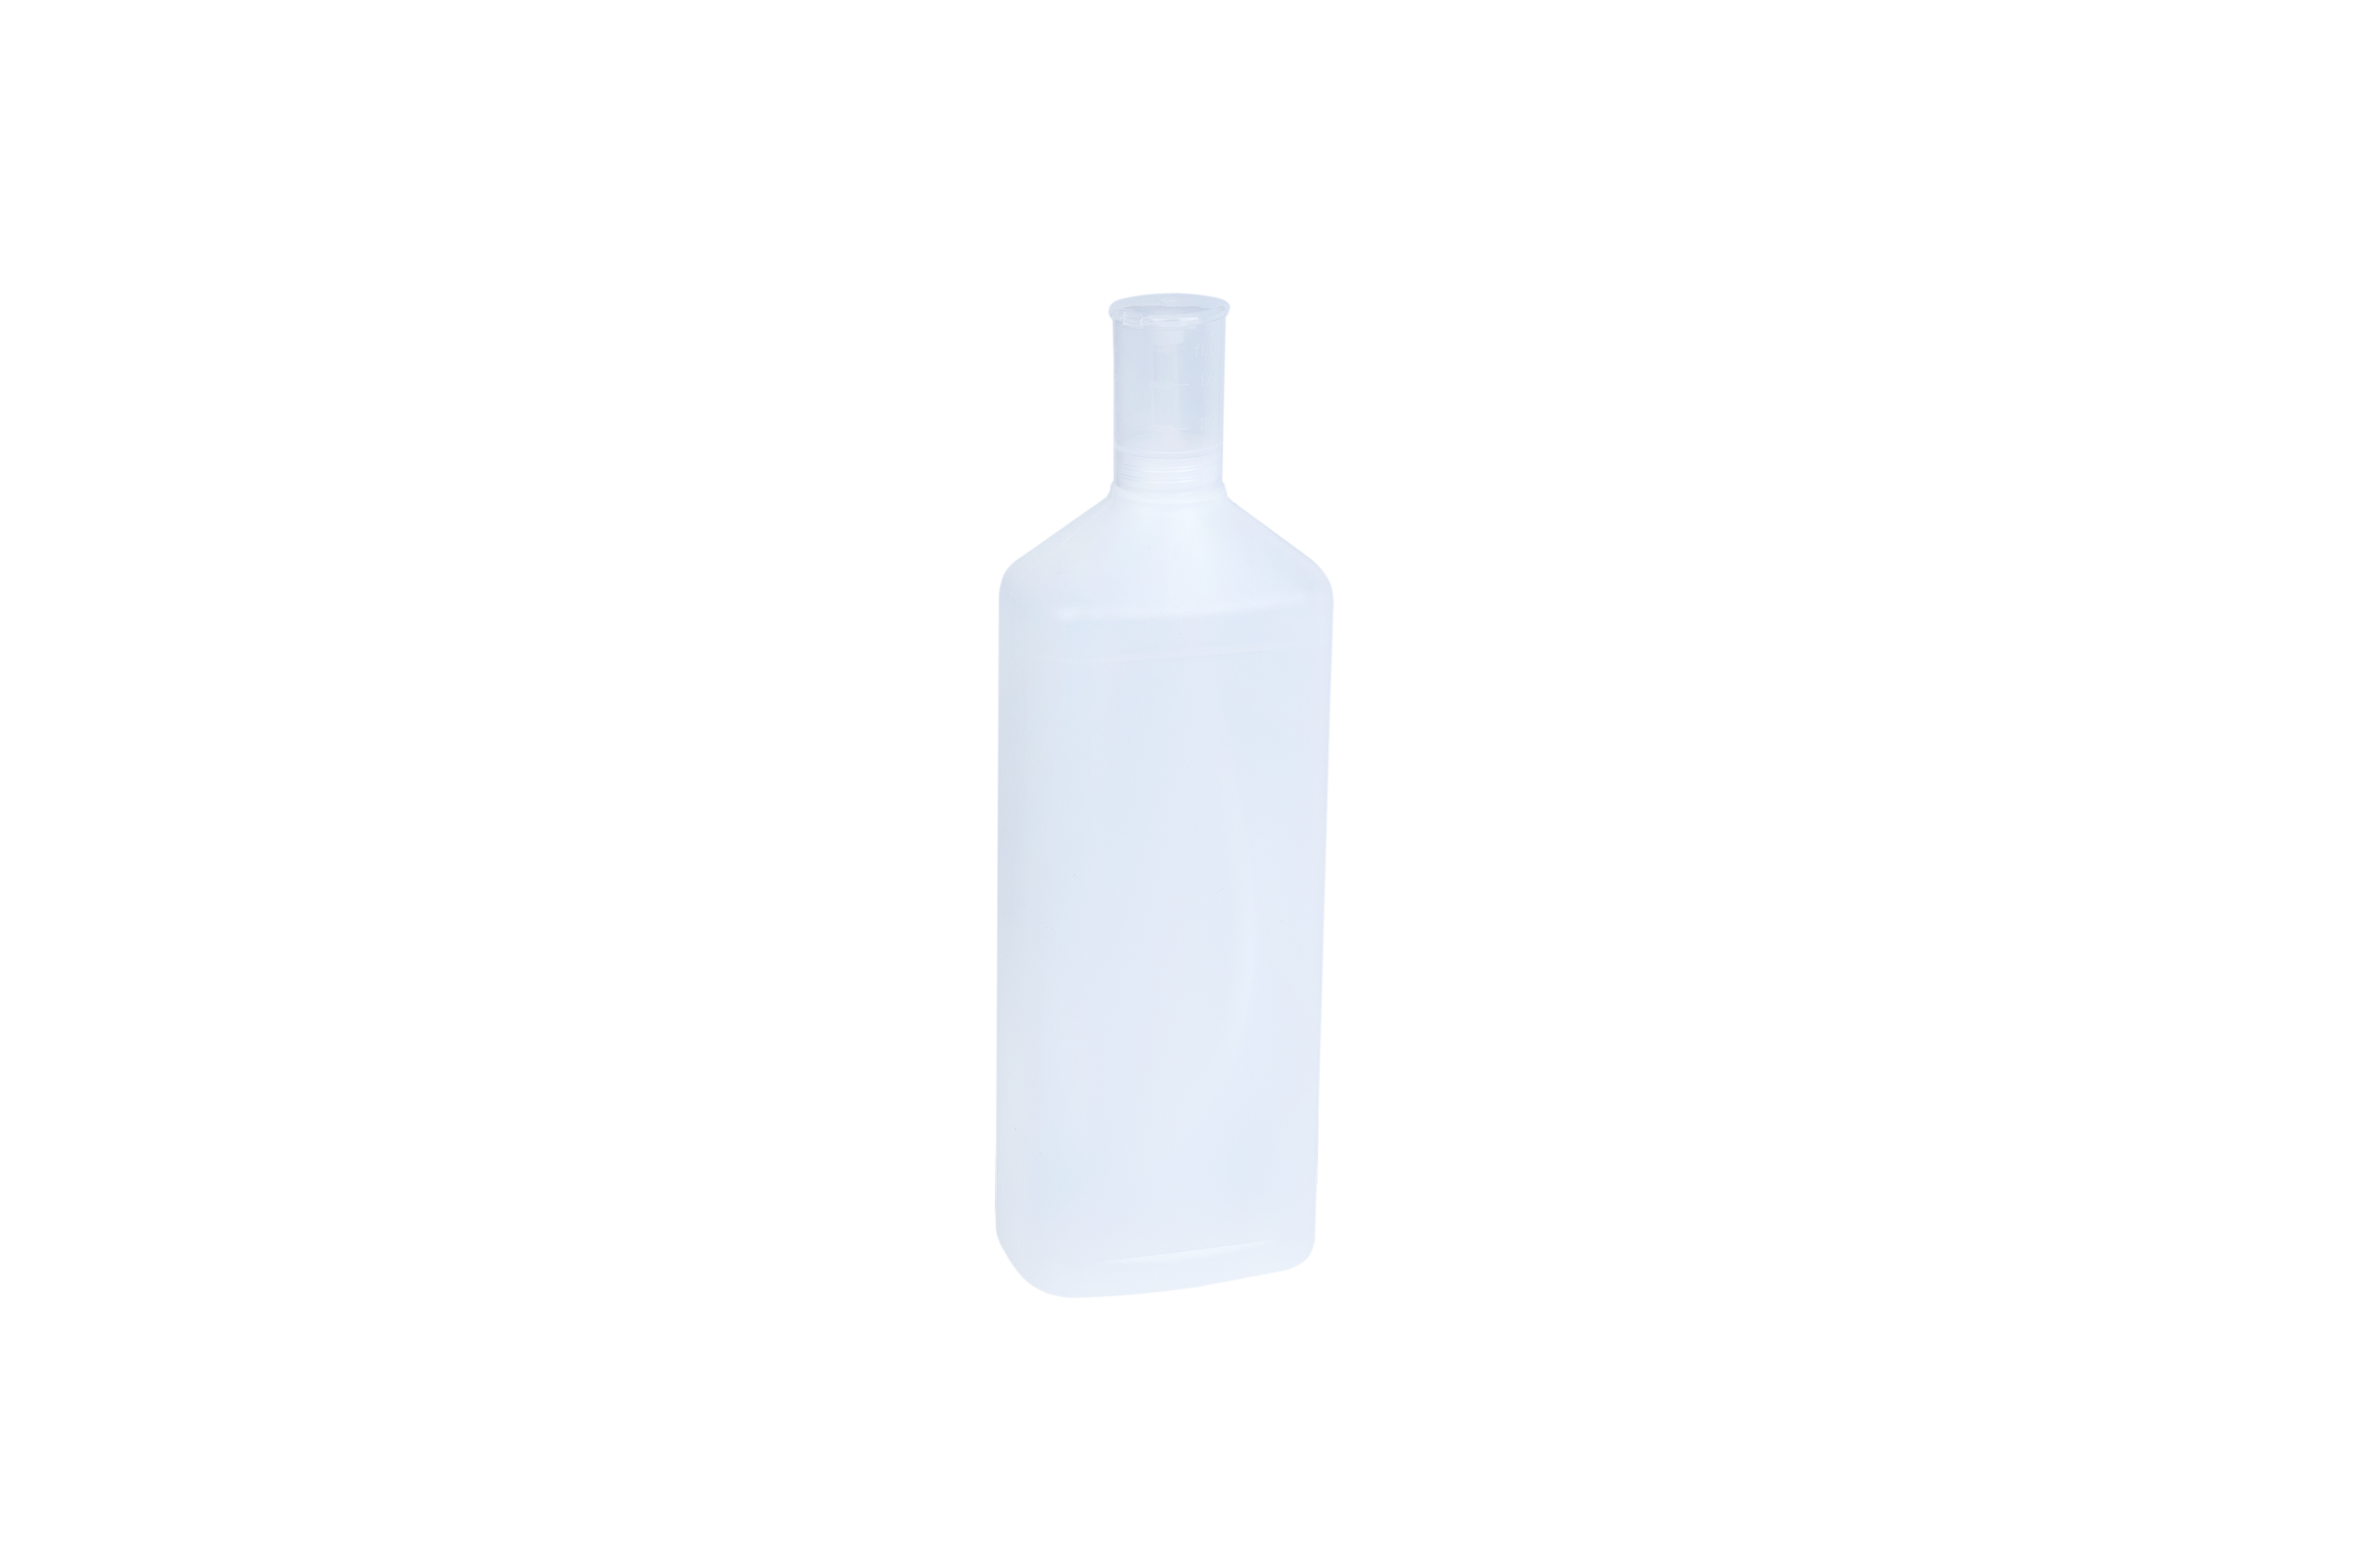 Dosierflasche mit Dosierer ohne Etikett